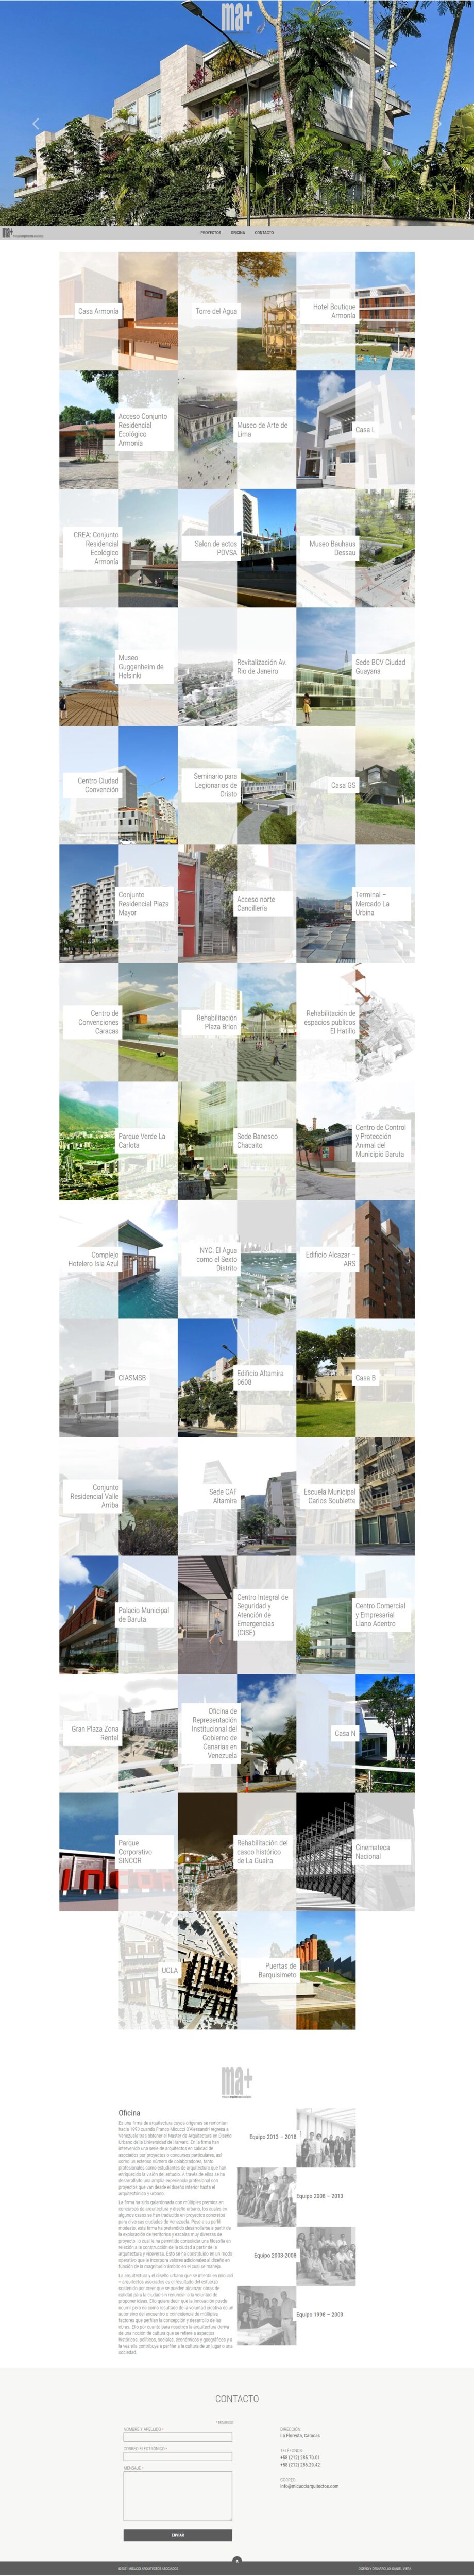 Micucci Arquitectos Asociados | Portafolio de la oficina de Arquitectura venezolana dirigida por Franco Micucci. Desarrollada para WordPress con bootstrap y scroll infinito.